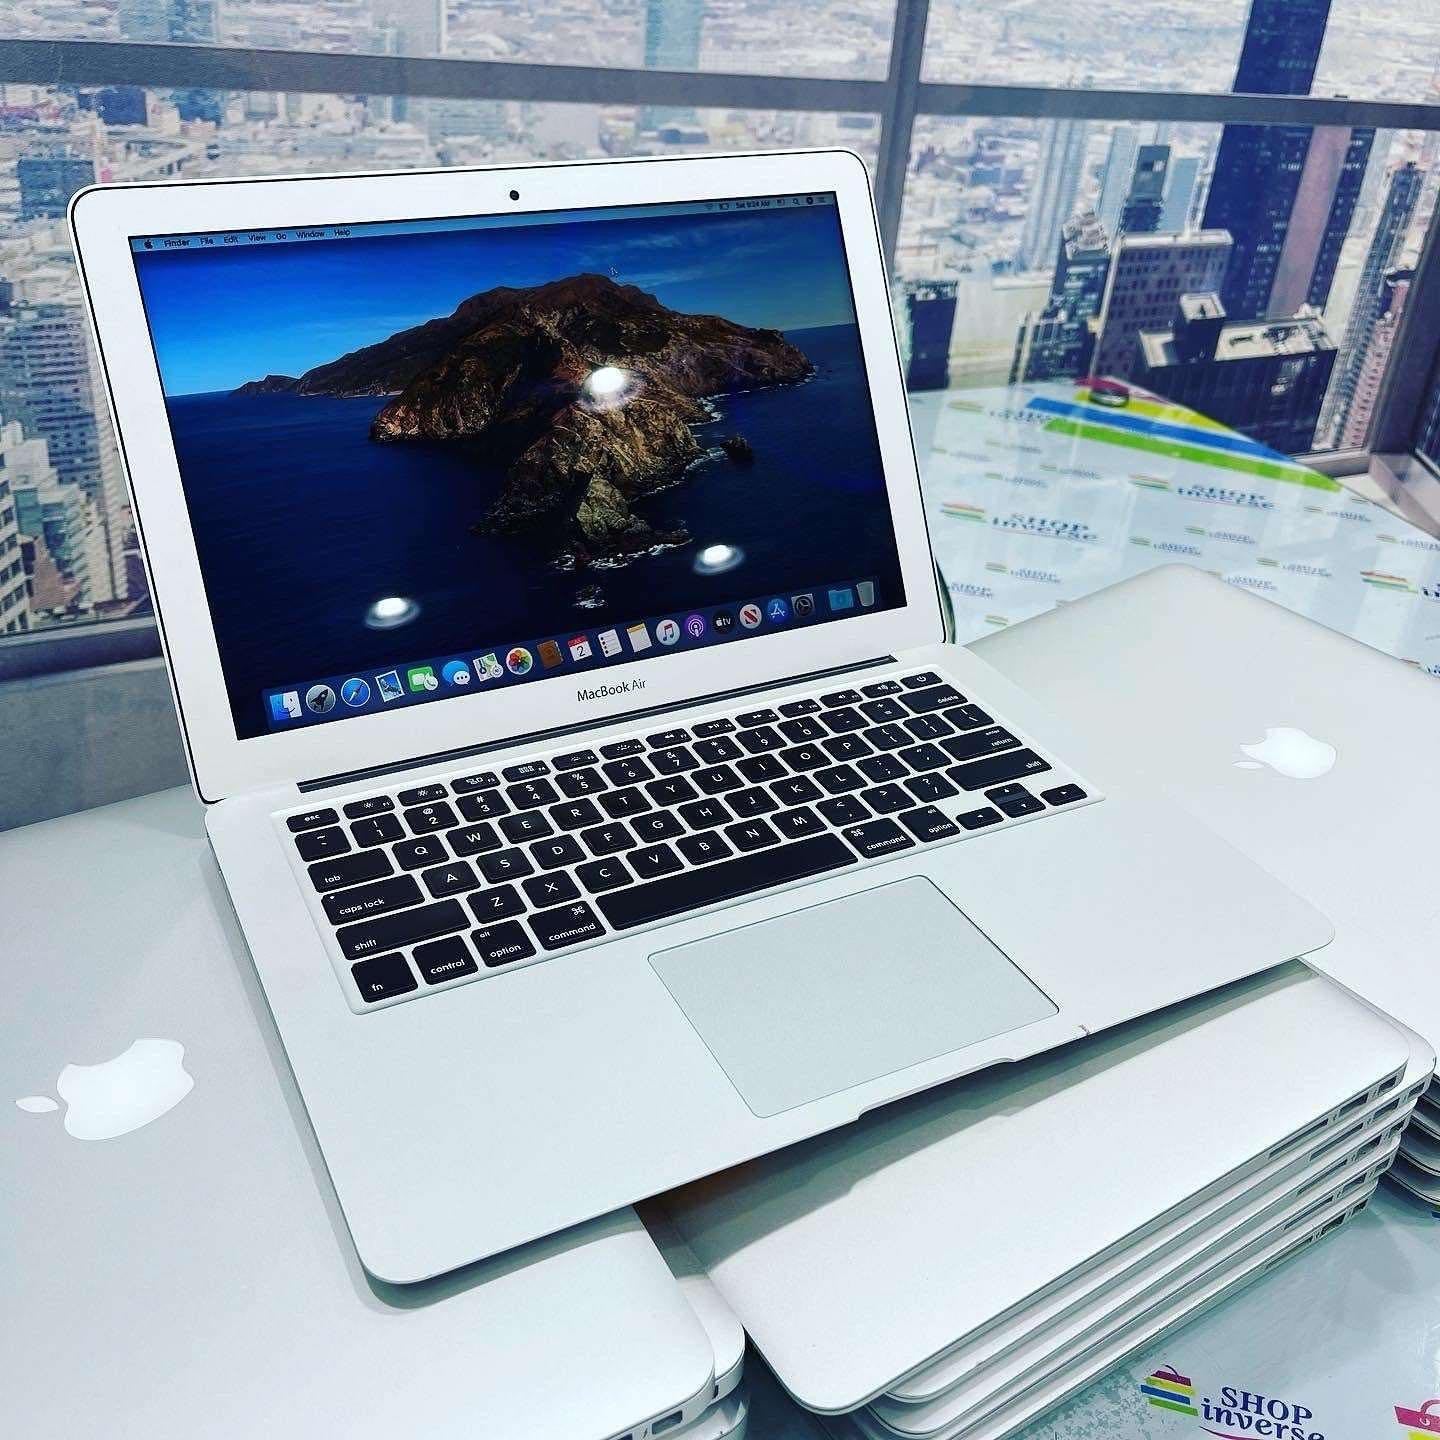 2011 Apple MacBook Air - Intel Core i5 - 128GB SSD - 4GB RAM